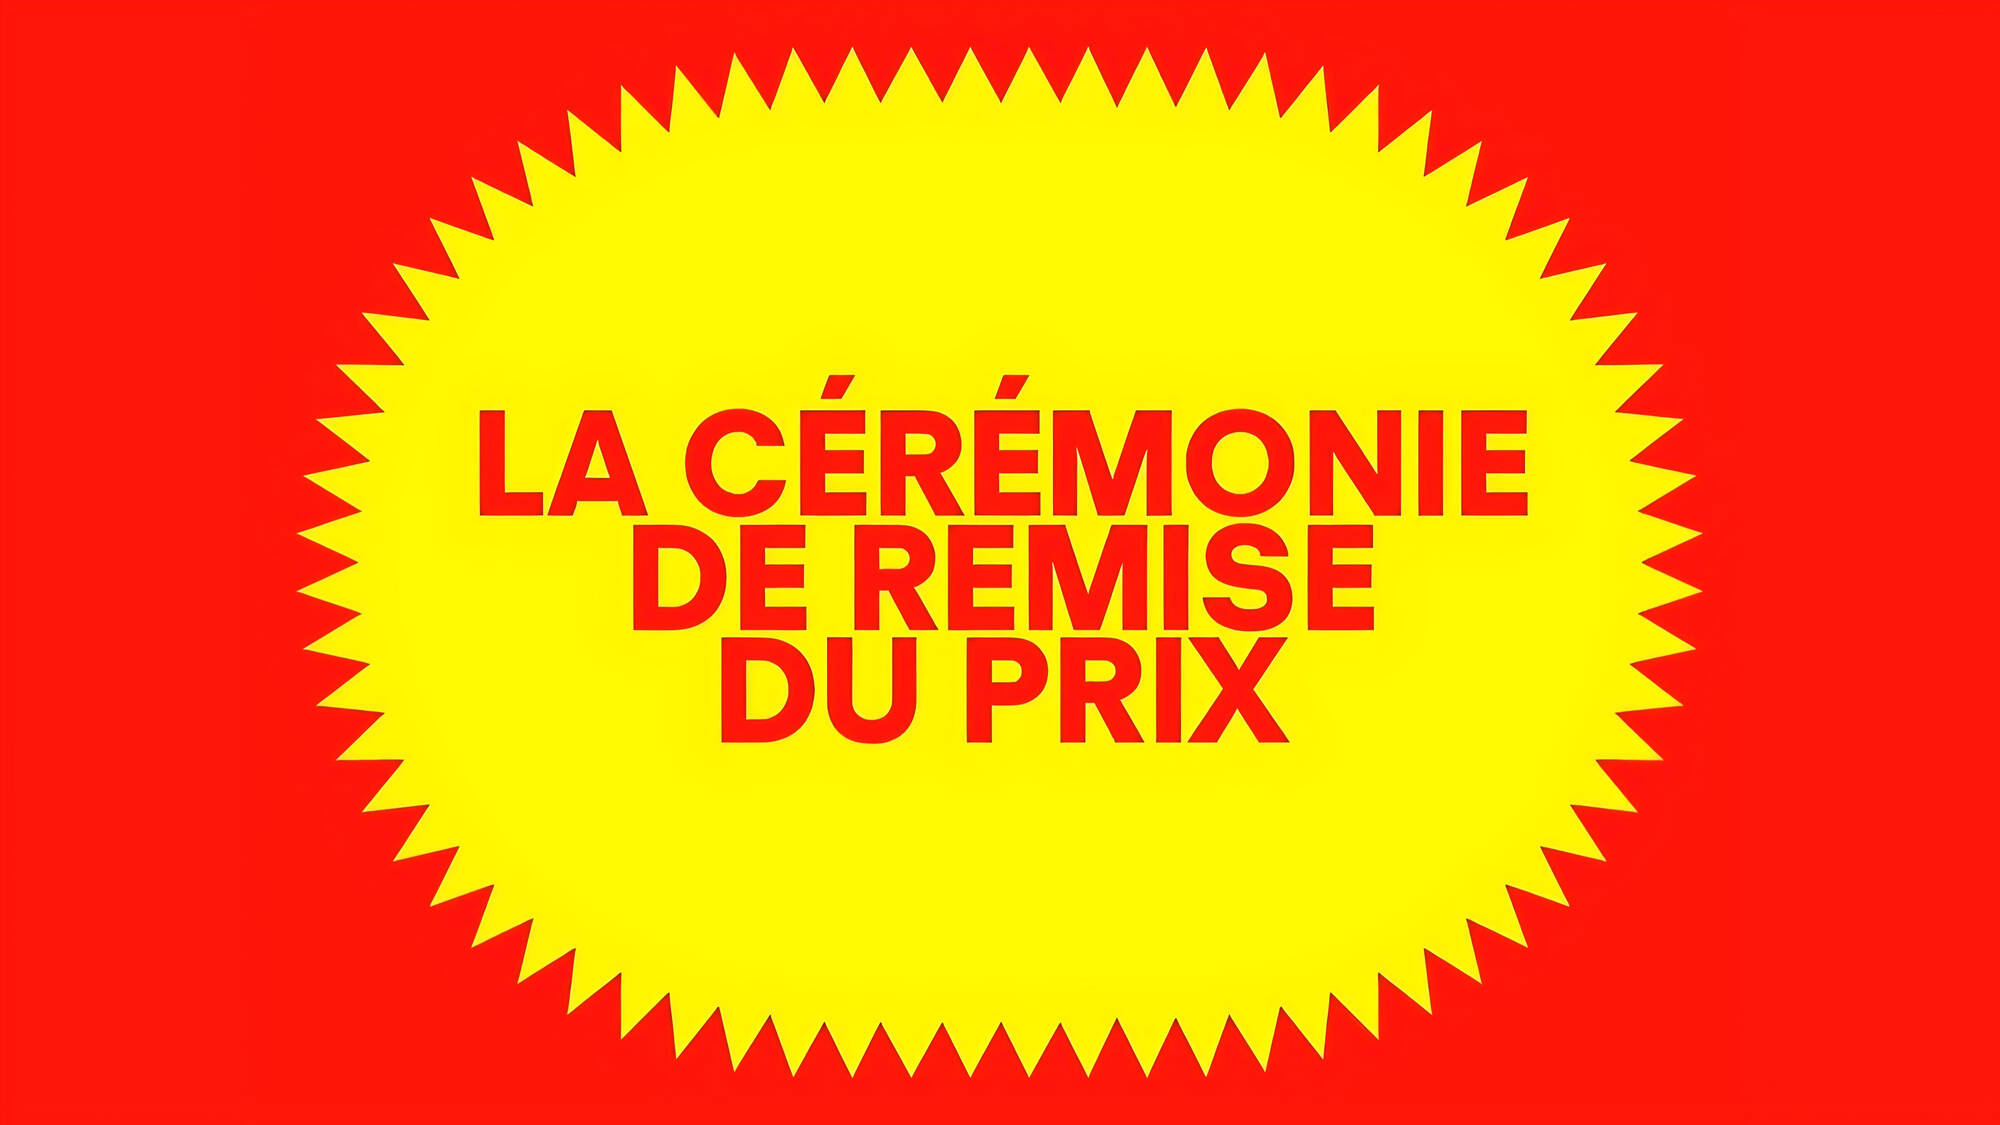 Visuel de la cérémonie de remise du Prix de la Ville de Lausanne